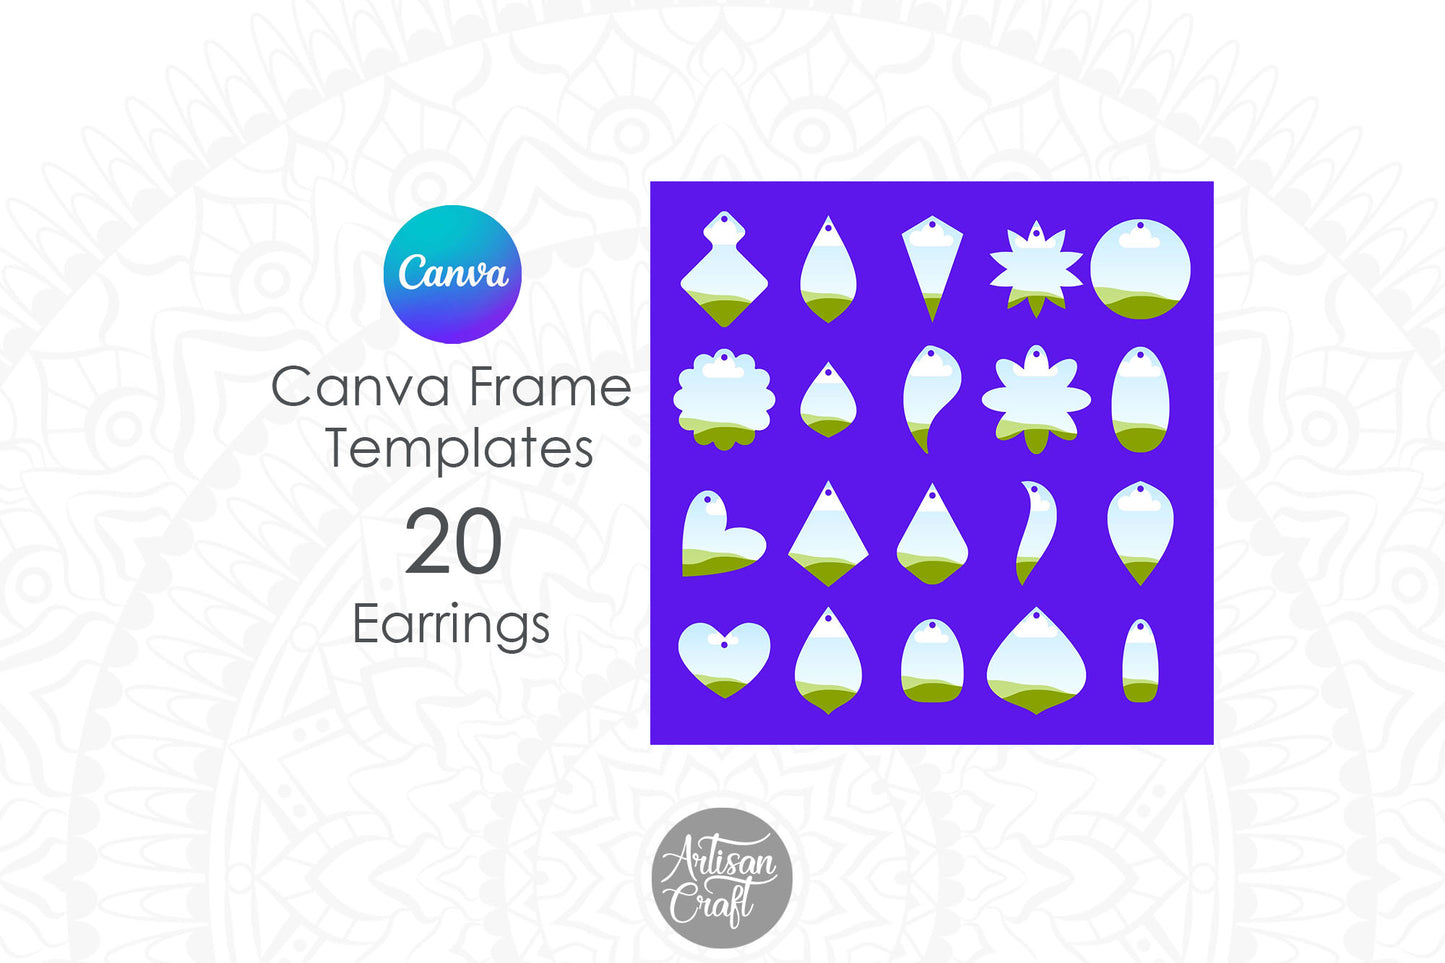 Canva Earrings Frame Template